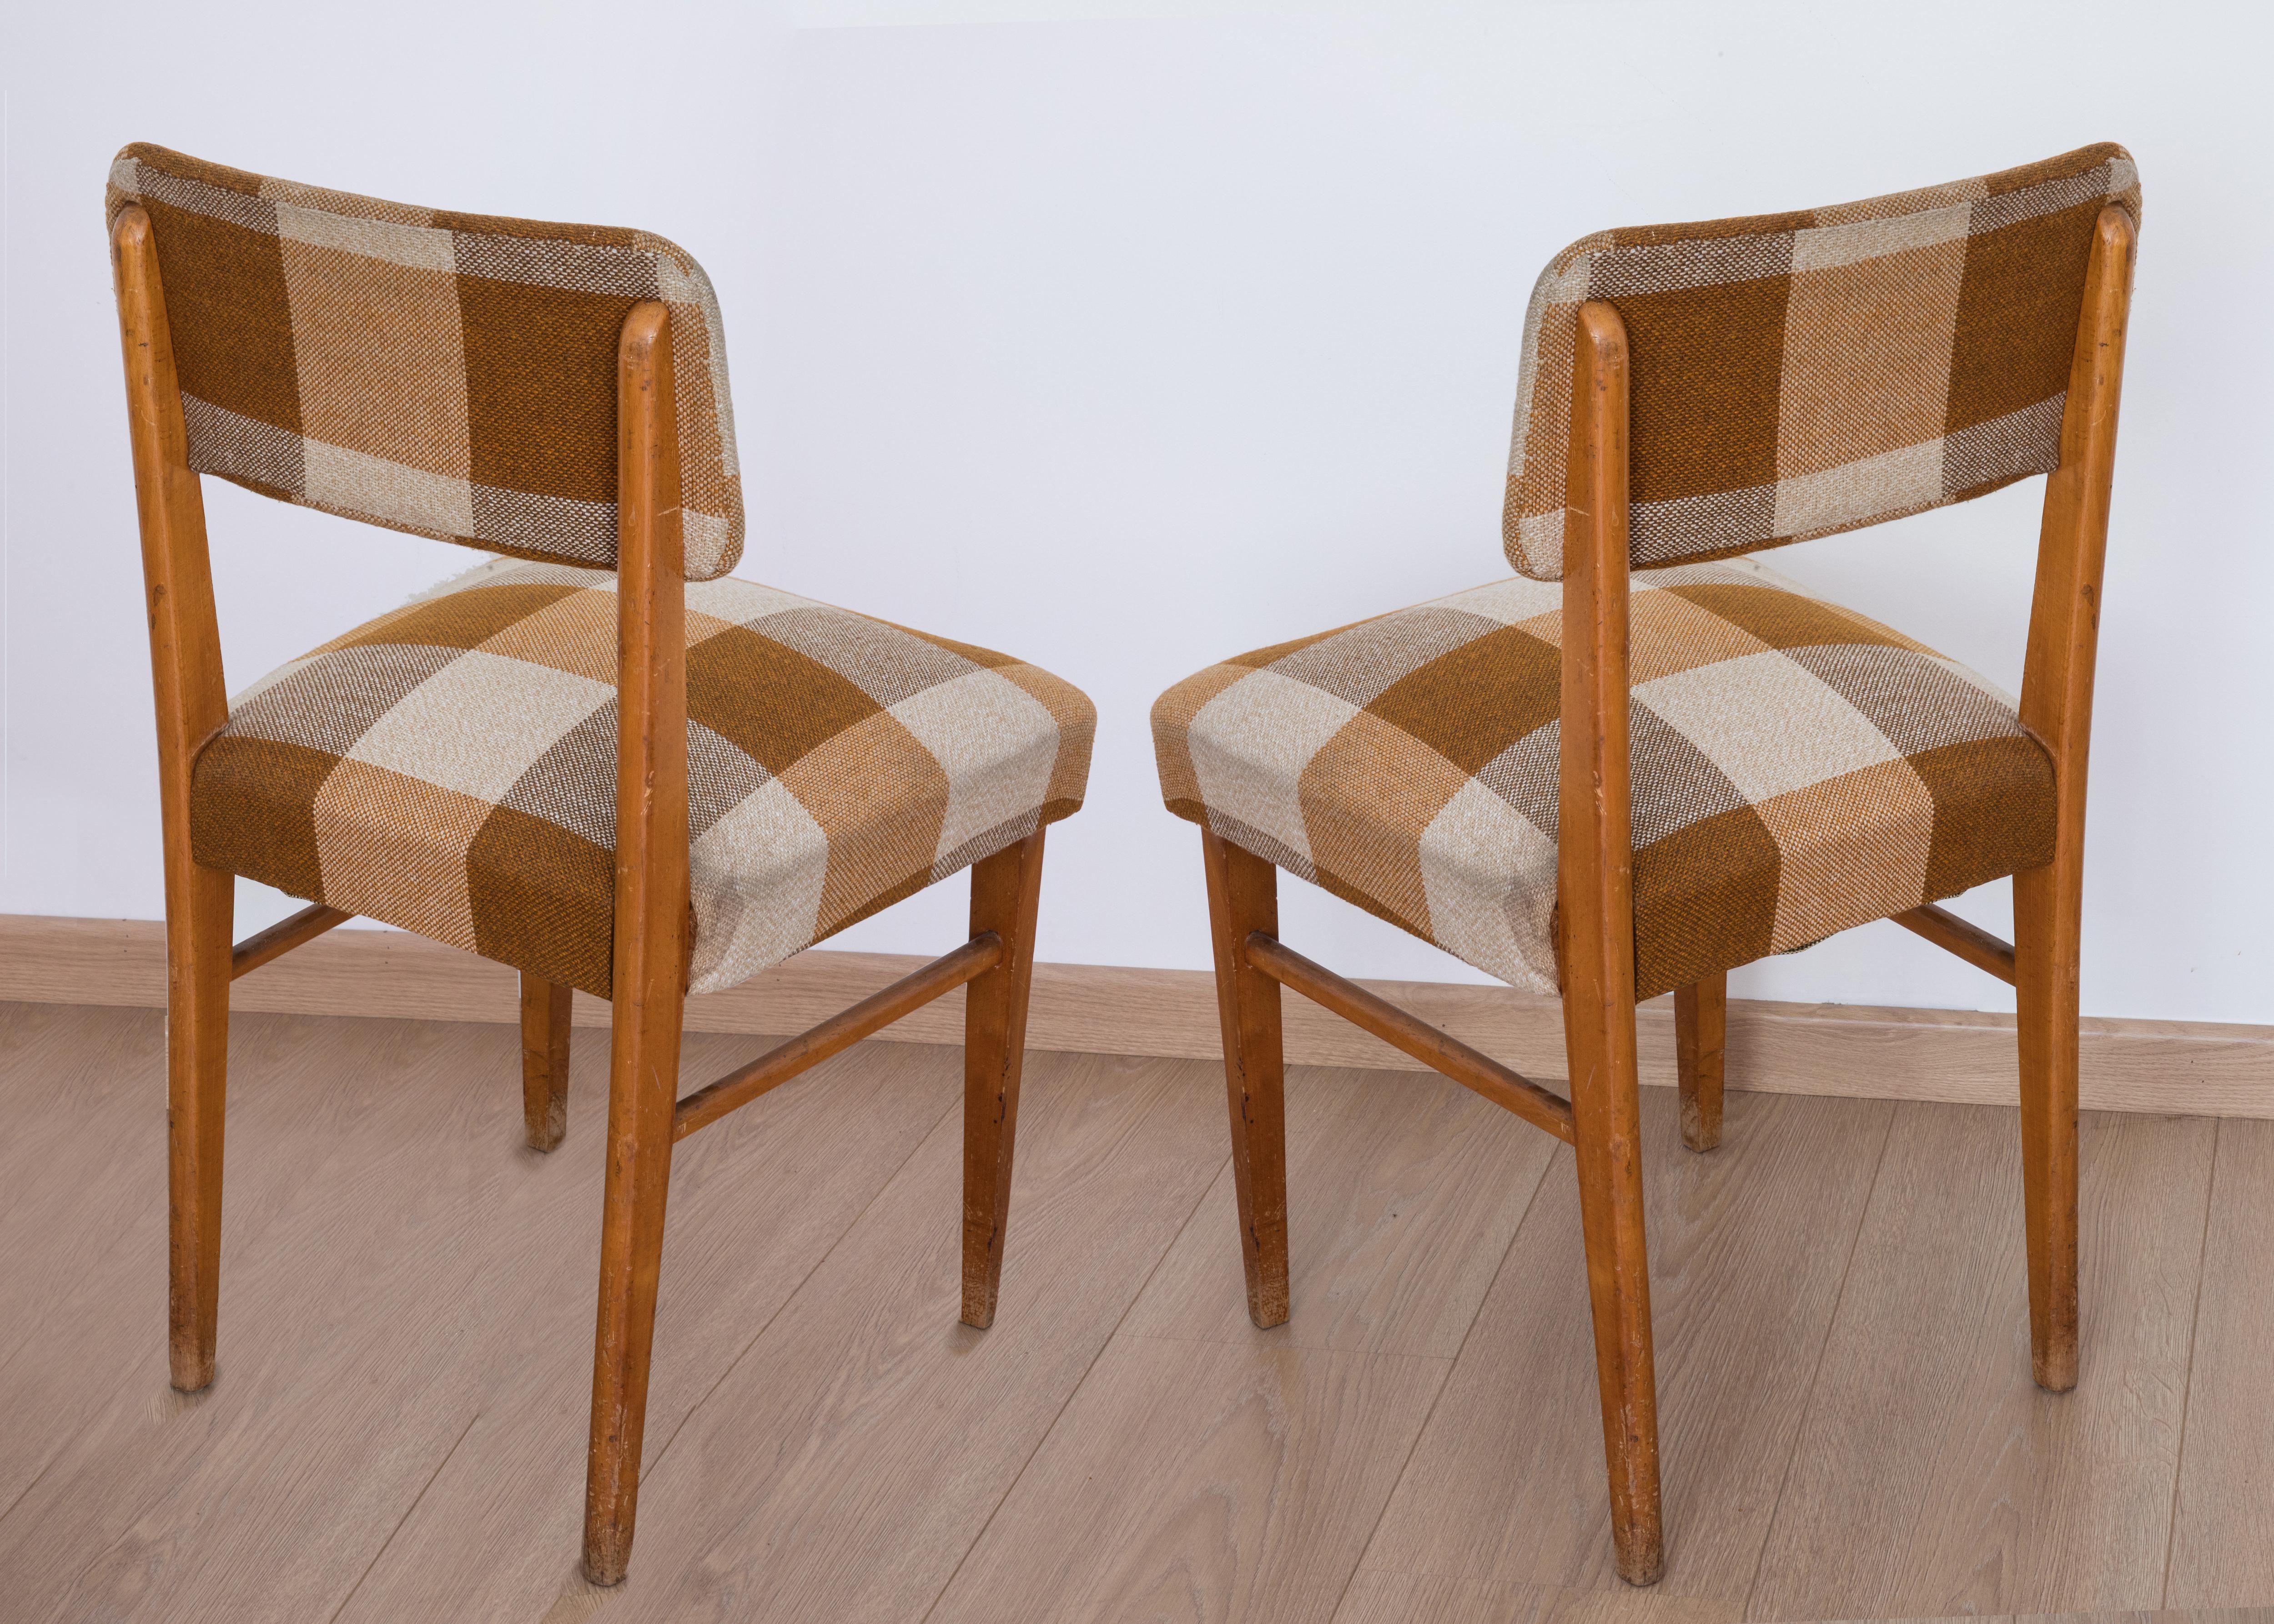 paire de chaises originales des années 1950. structure en bois et siège recouvert de tissu. total 85 cm, profondeur 48 cm, largeur 44 cm, environ. Design italien probablement Anonima Castelli Bologna.